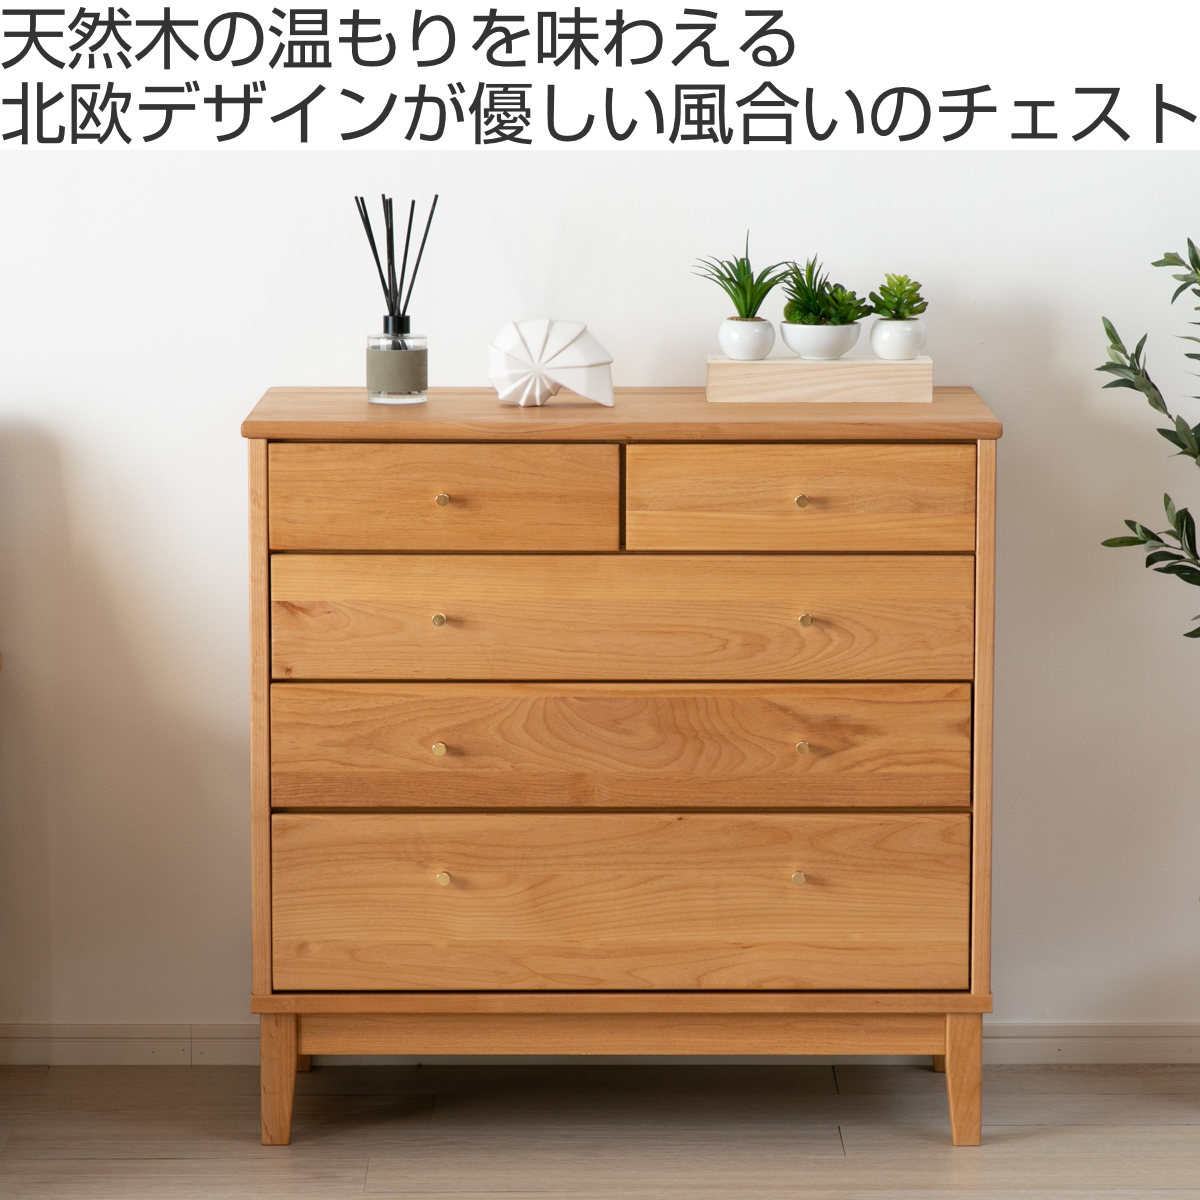 木目 ナチュラル タンス 箪笥 チェスト 北欧風 - 東京都の家具